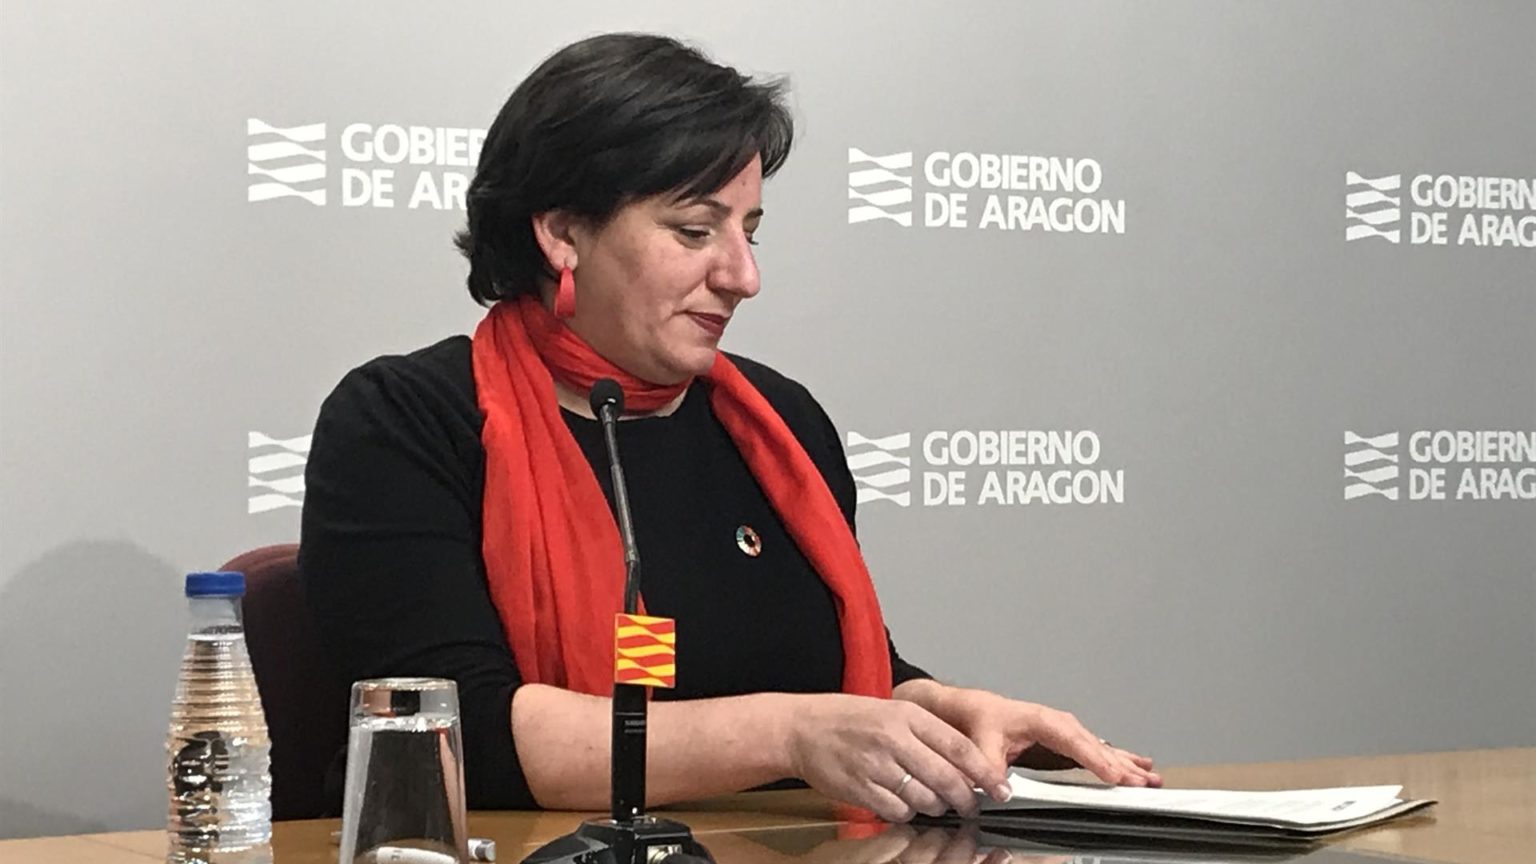 Podemos Aragón sustituye a su portavoz parlamentario tras acudir al acto de ‘Sumar’